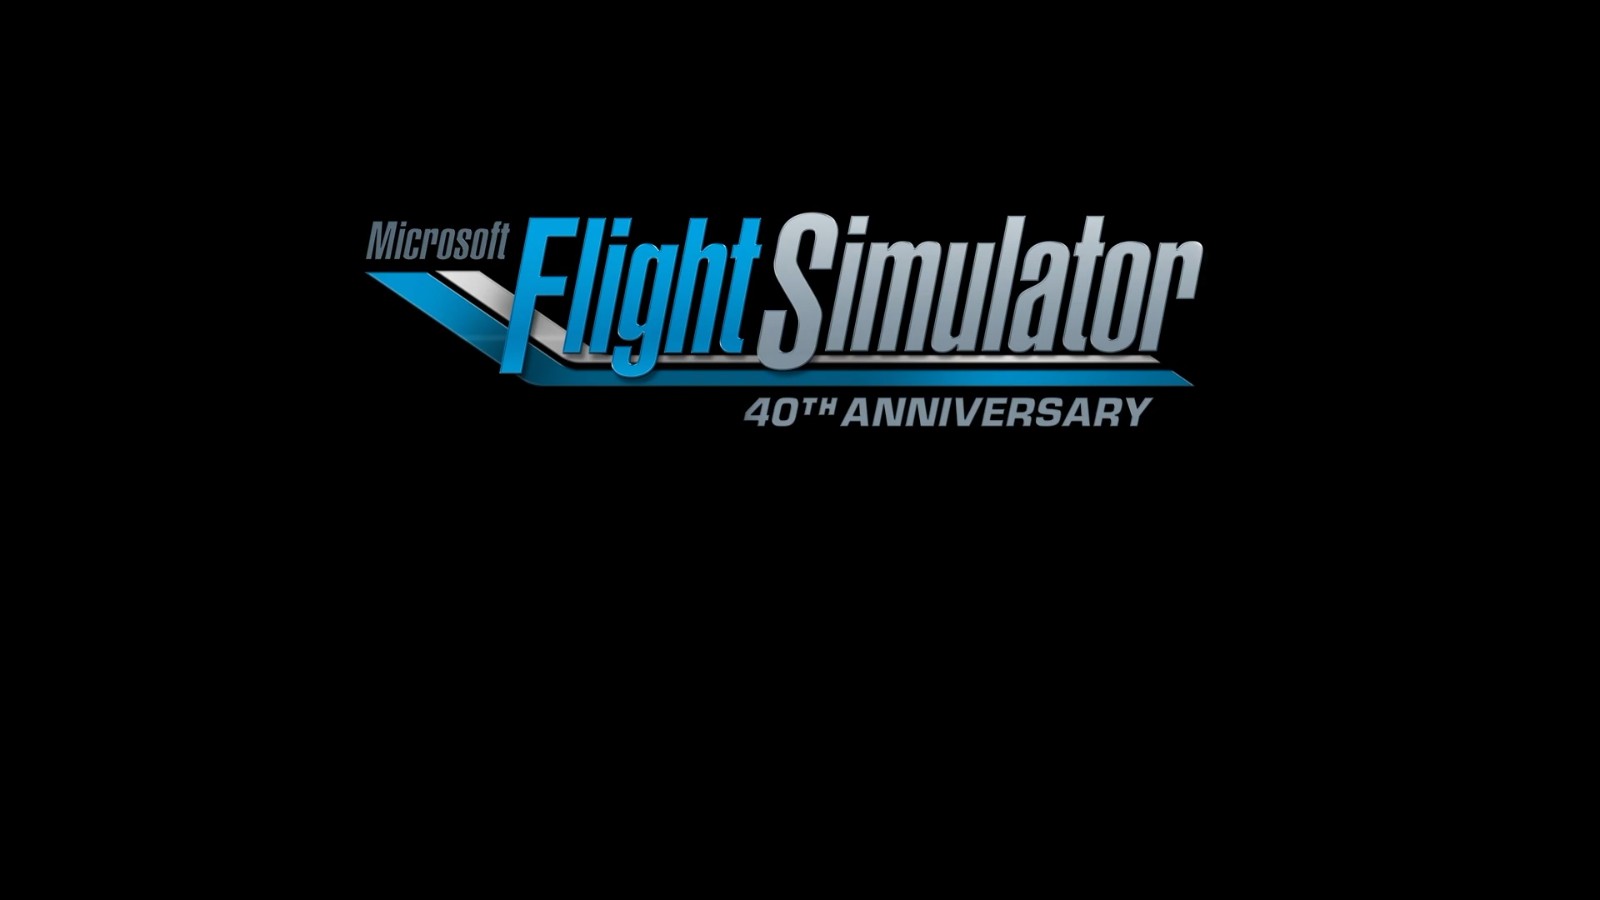 《微软飞行模拟40周年版》公布 今年双11发售_性里番导航网,acg漫画在线观看 二次世界 第13张